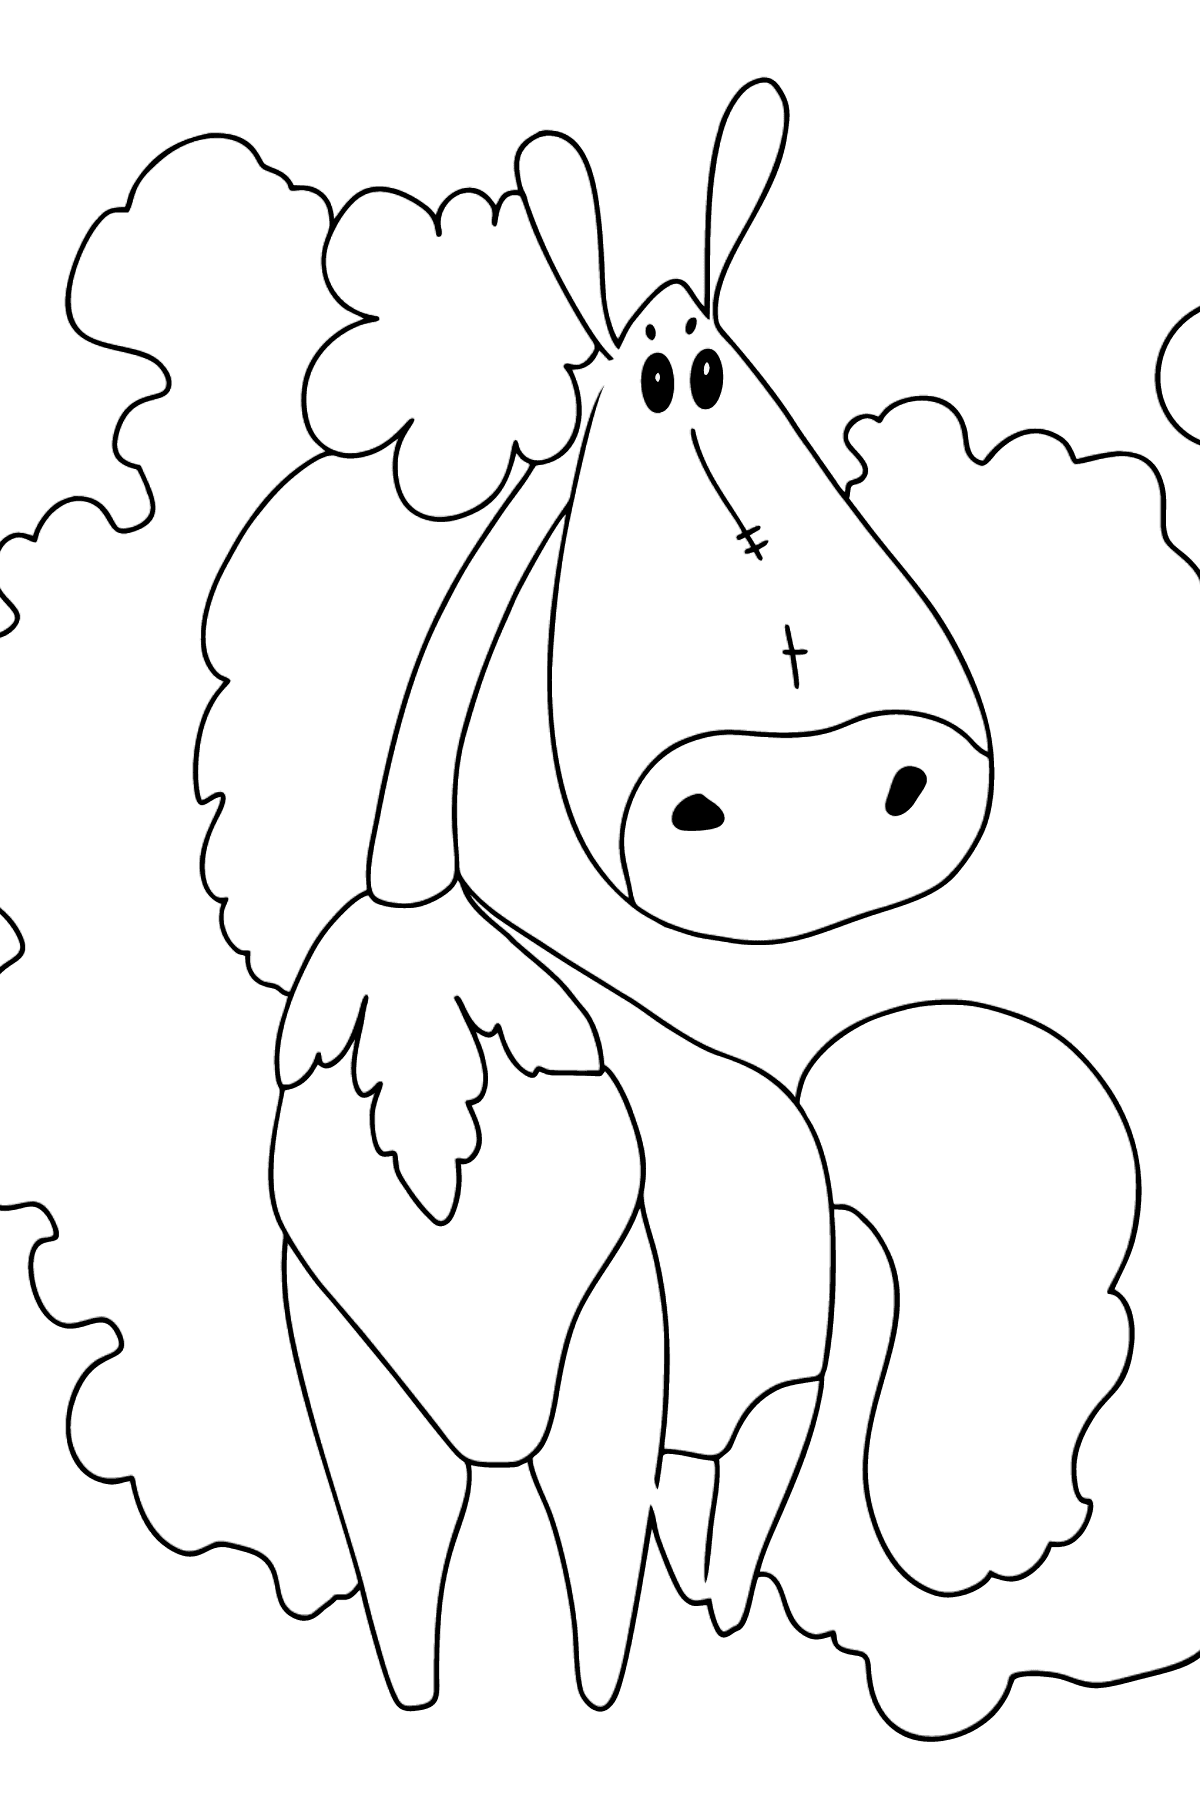 Простая раскраска - Озорная лошадка - Картинки для Детей